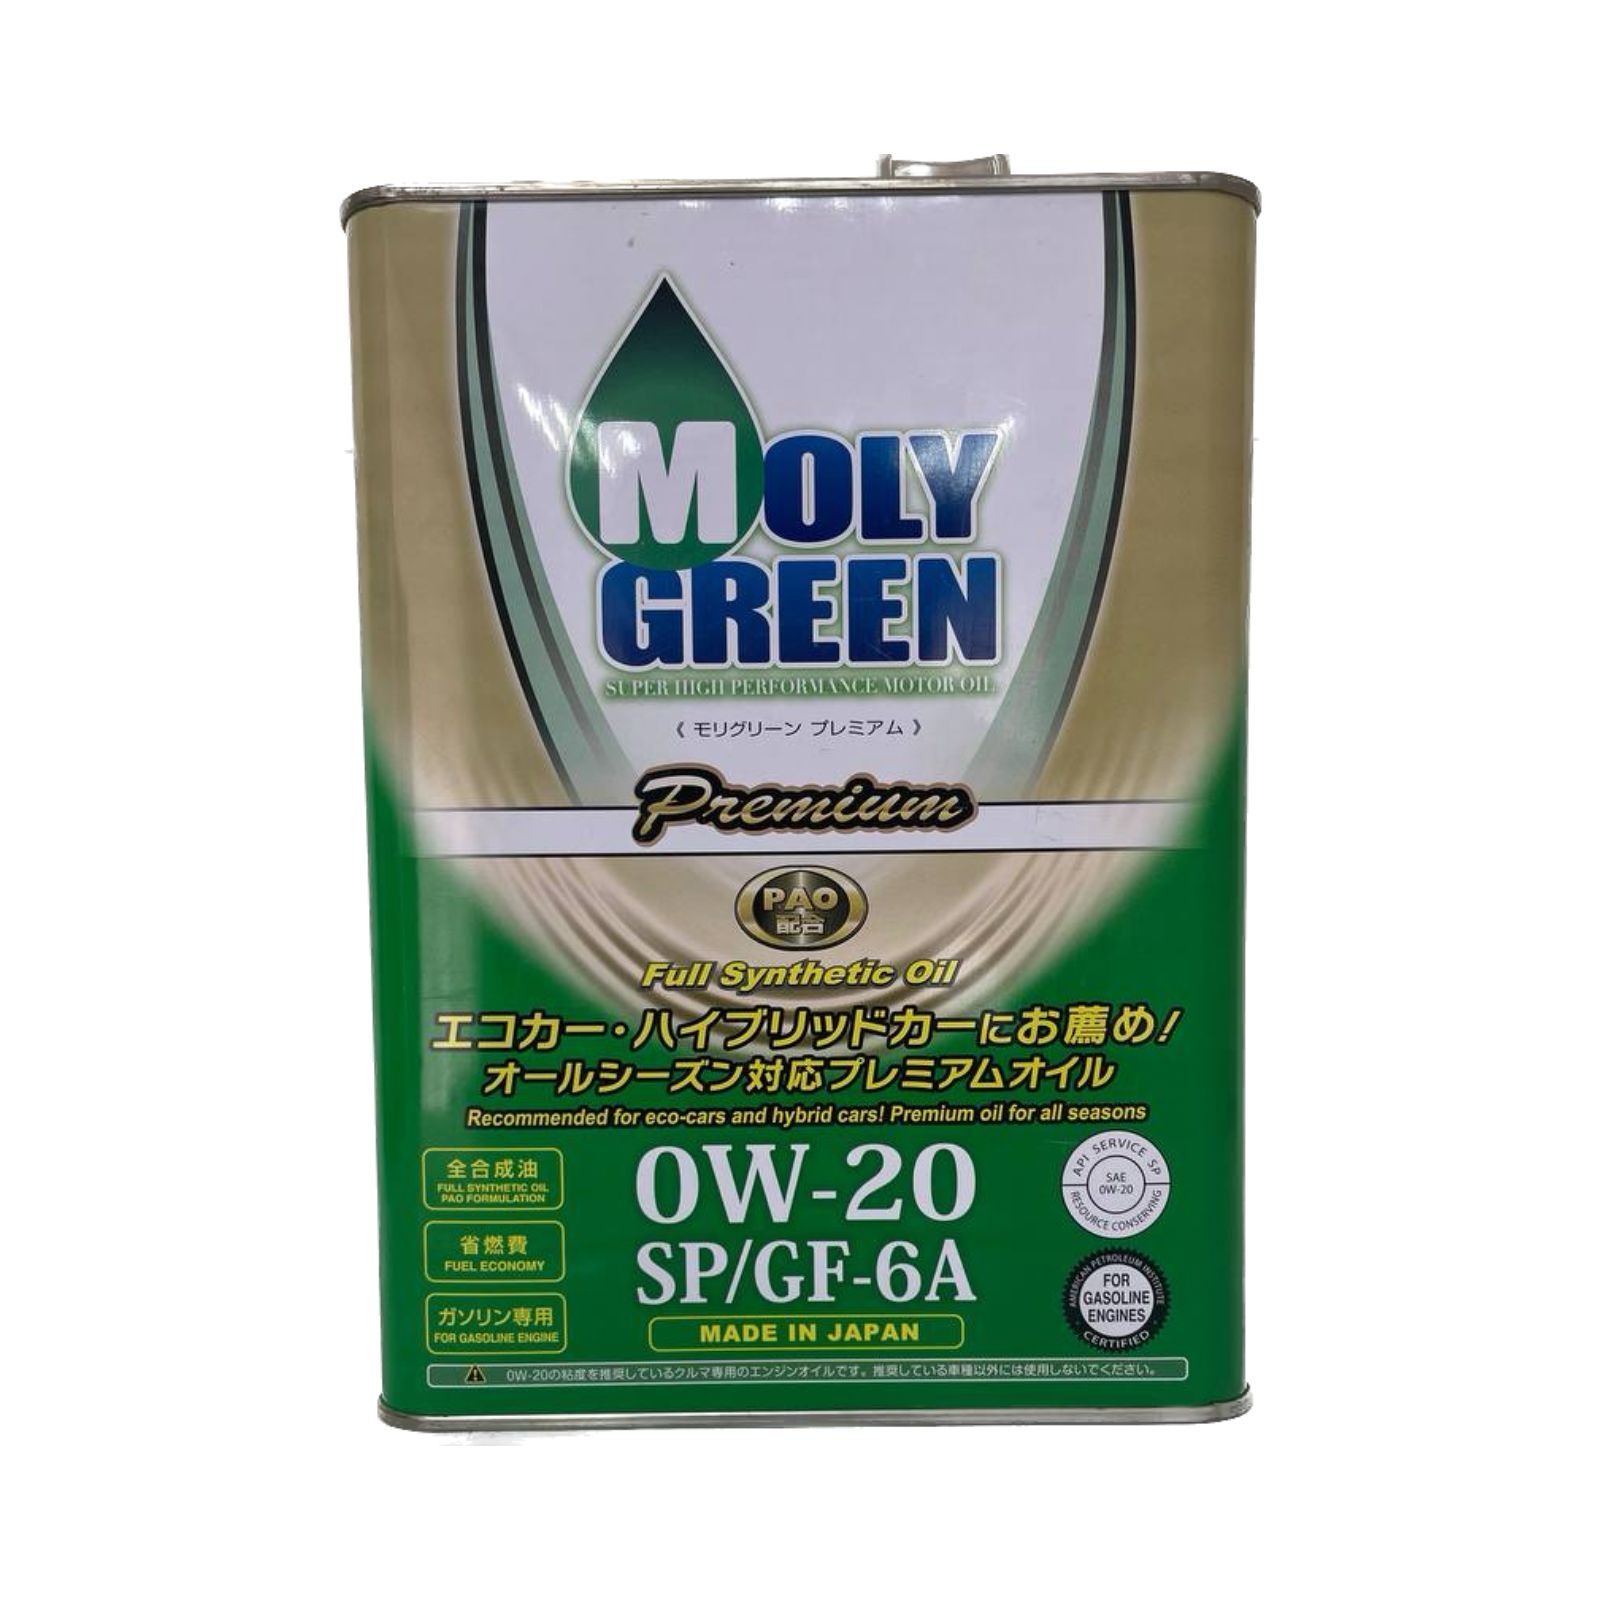 Отзыв масло moly green. Moly Green 0w20 Premium. Moly Green 0w20 Hybrid. Moly Green 0470166масло трансмиссионное синтетическое "Premium CVT Fluid", 4л.